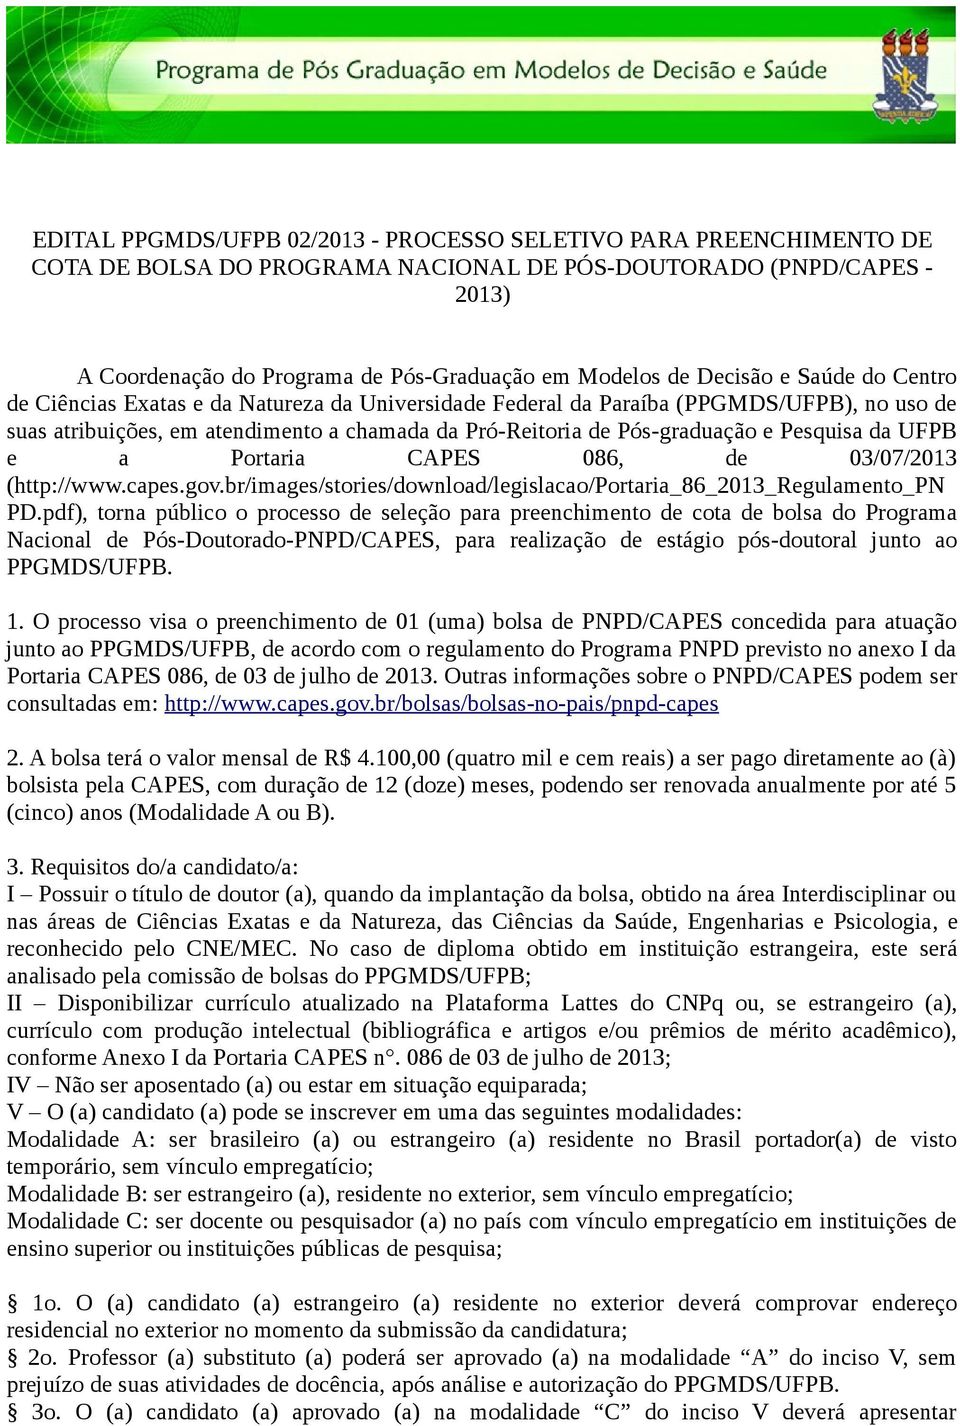 Pesquisa da UFPB e a Portaria CAPES 086, de 03/07/2013 (http://www.capes.gov.br/images/stories/download/legislacao/portaria_86_2013_regulamento_pn PD.